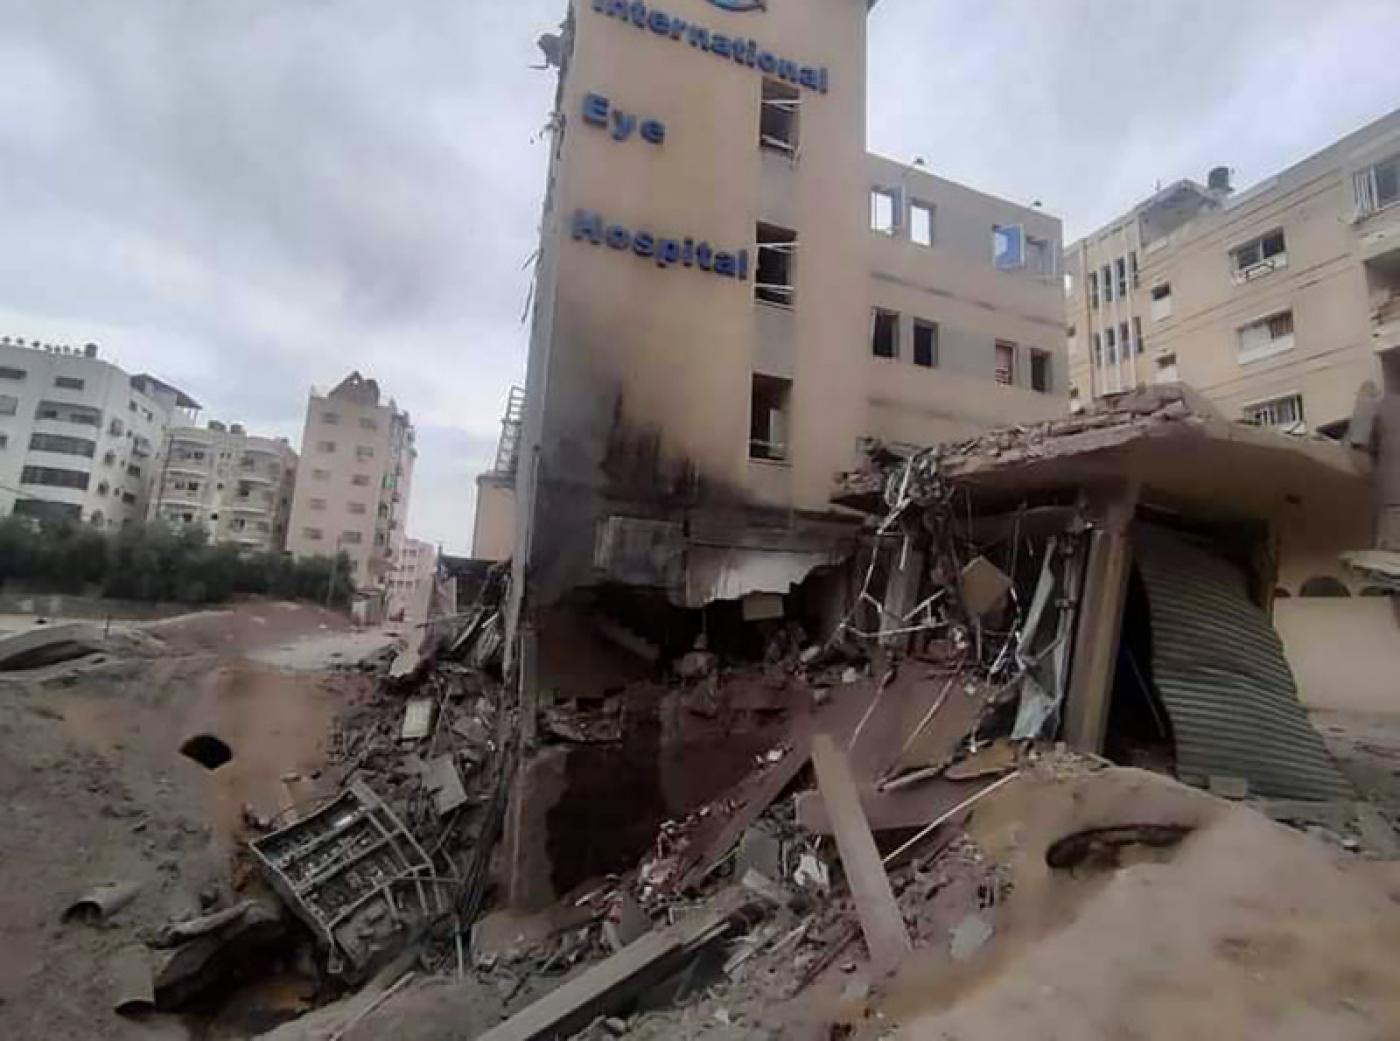 加薩走廊納薩爾區附近的眼科醫院大 樓遭到轟炸的慘況。中央社